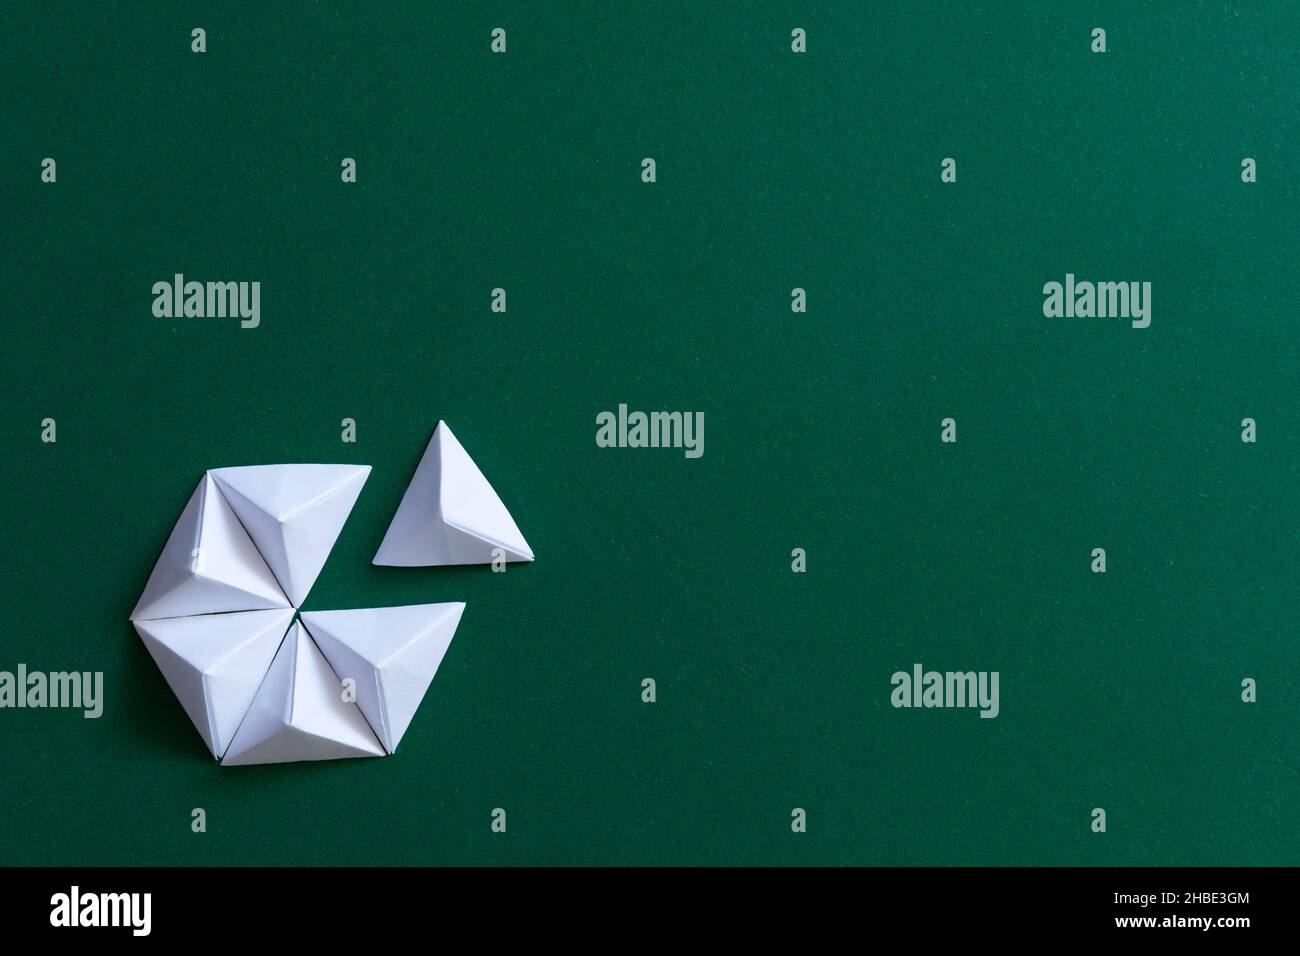 Arrière-plan origami blanc et vert.Concept de pensée différent Banque D'Images